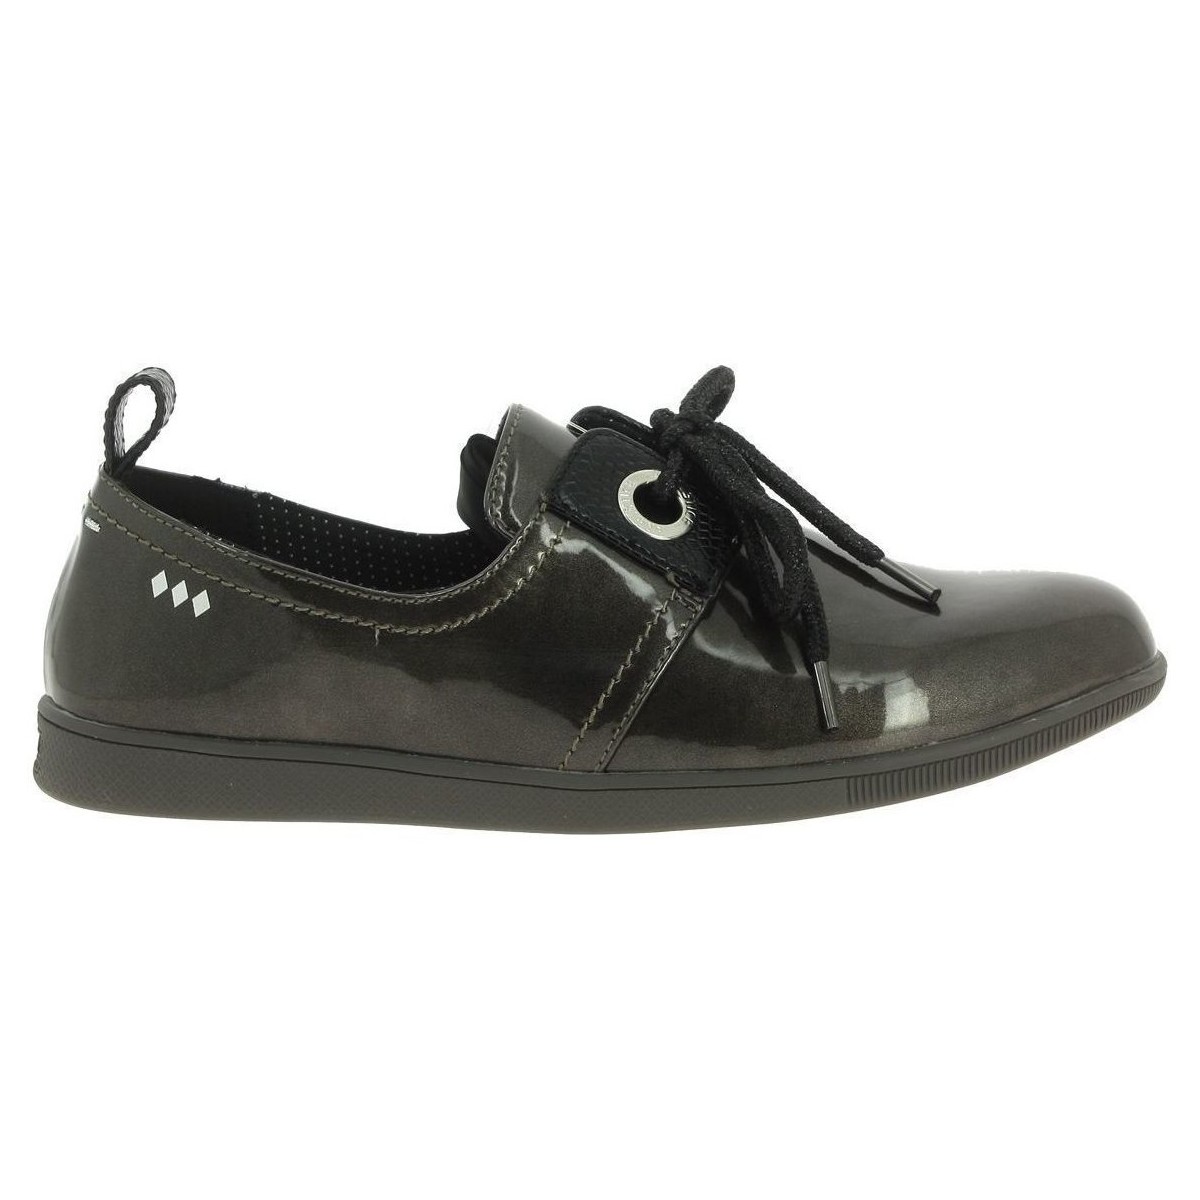 Παπούτσια Γυναίκα Sneakers Armistice STONE 1 W Grey